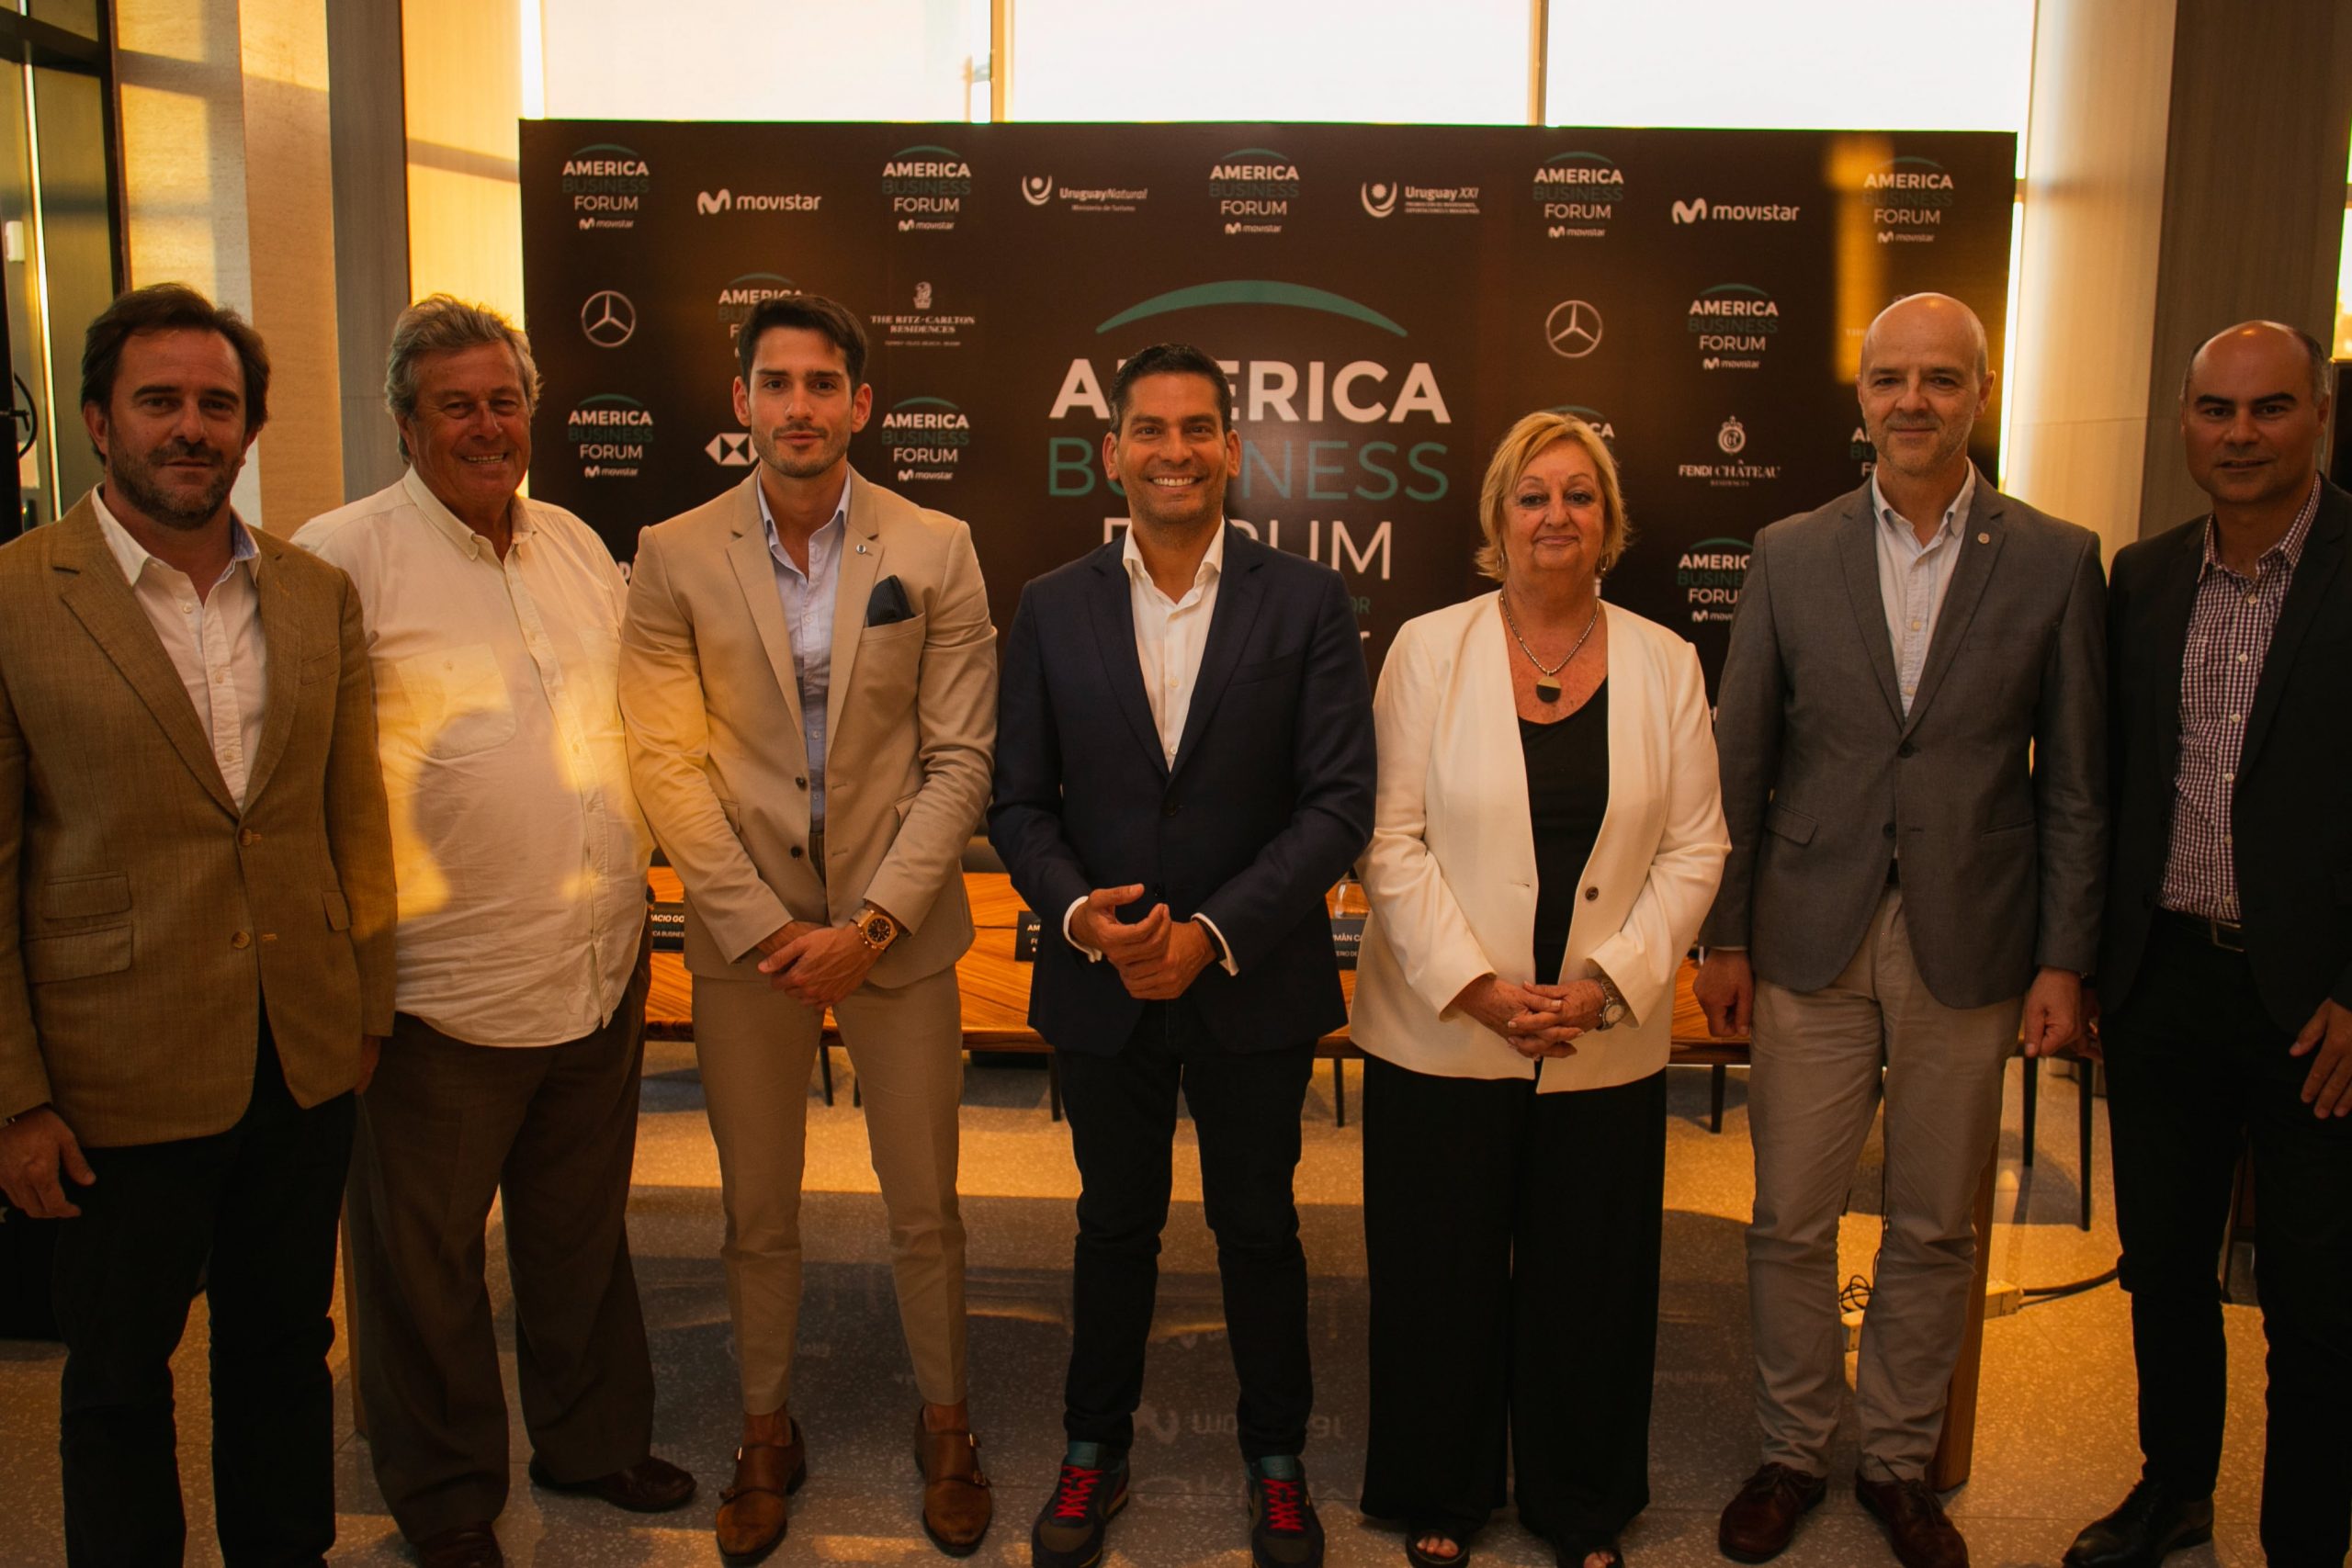 Bautismo del America Business Forum 2020 con Ismael Cala y autoridades uruguayas